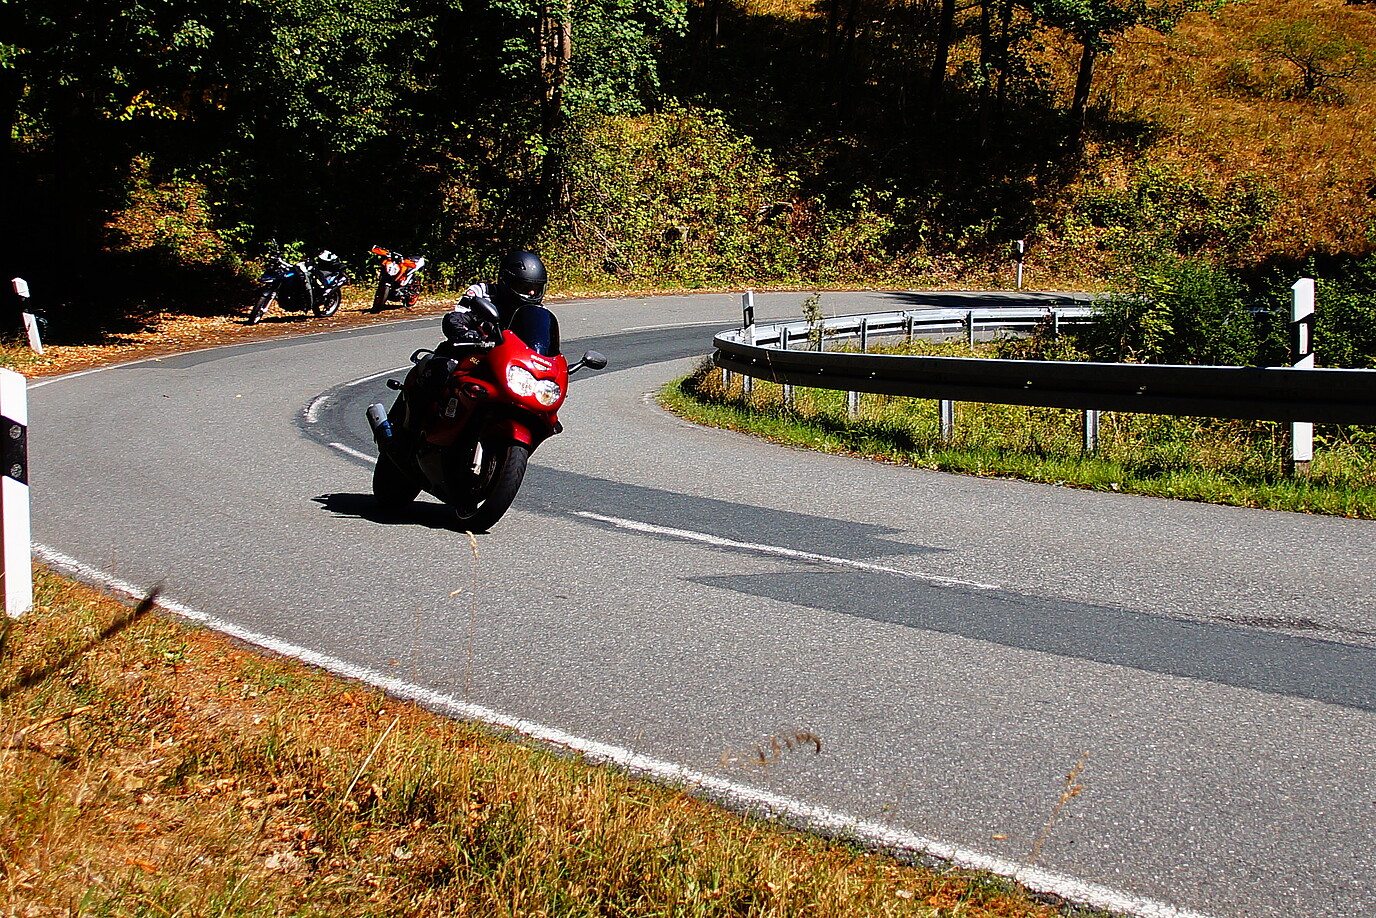 Eine motorradfahrende Person fährt eine kurvige Strecke im Harz entlang, im Hintergrund stehen zwei Motorräder